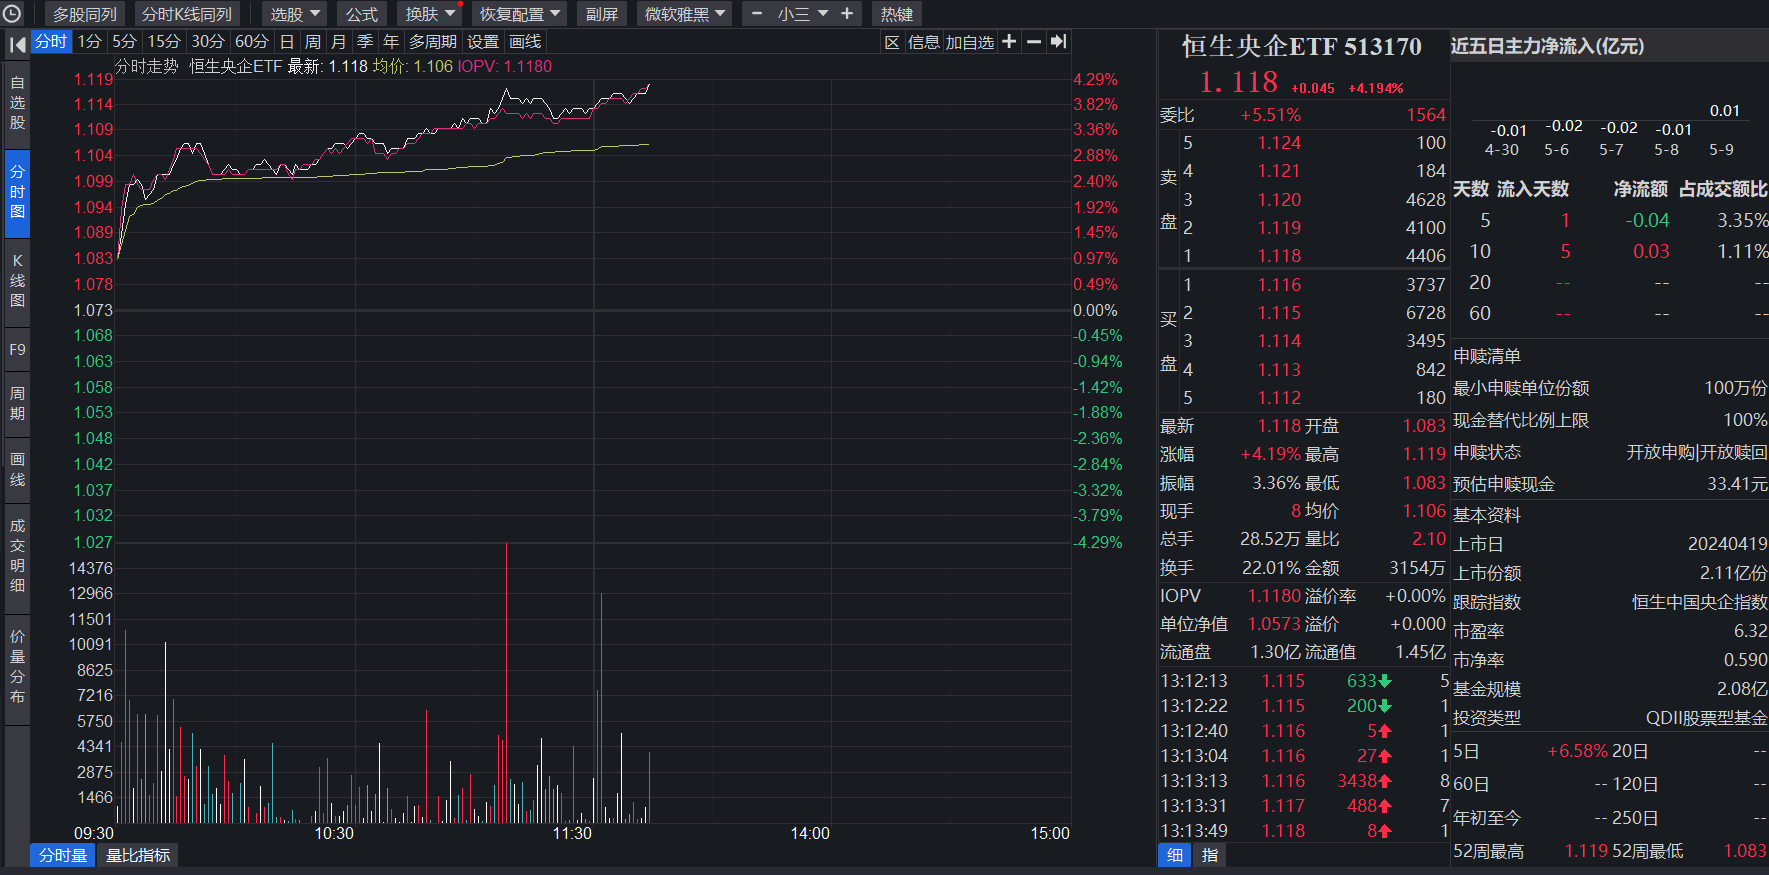 港股高分红投资热情再获提振，恒生央企ETF(513170)午后强势涨超4%！